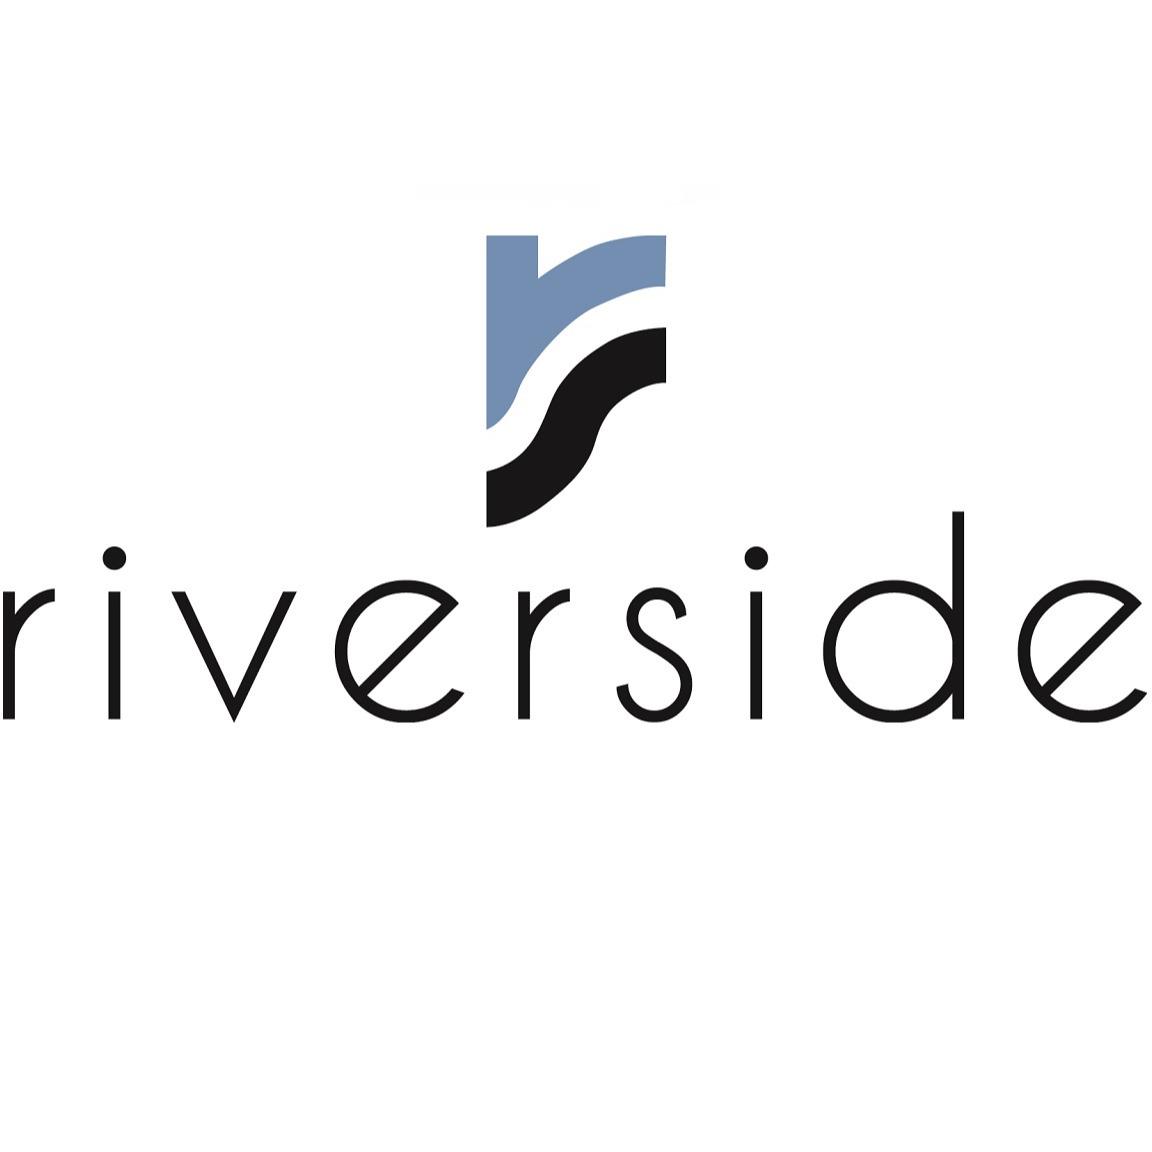 Riverside Apartments Logo Riverside Apartments Alexandria (571)366-5675